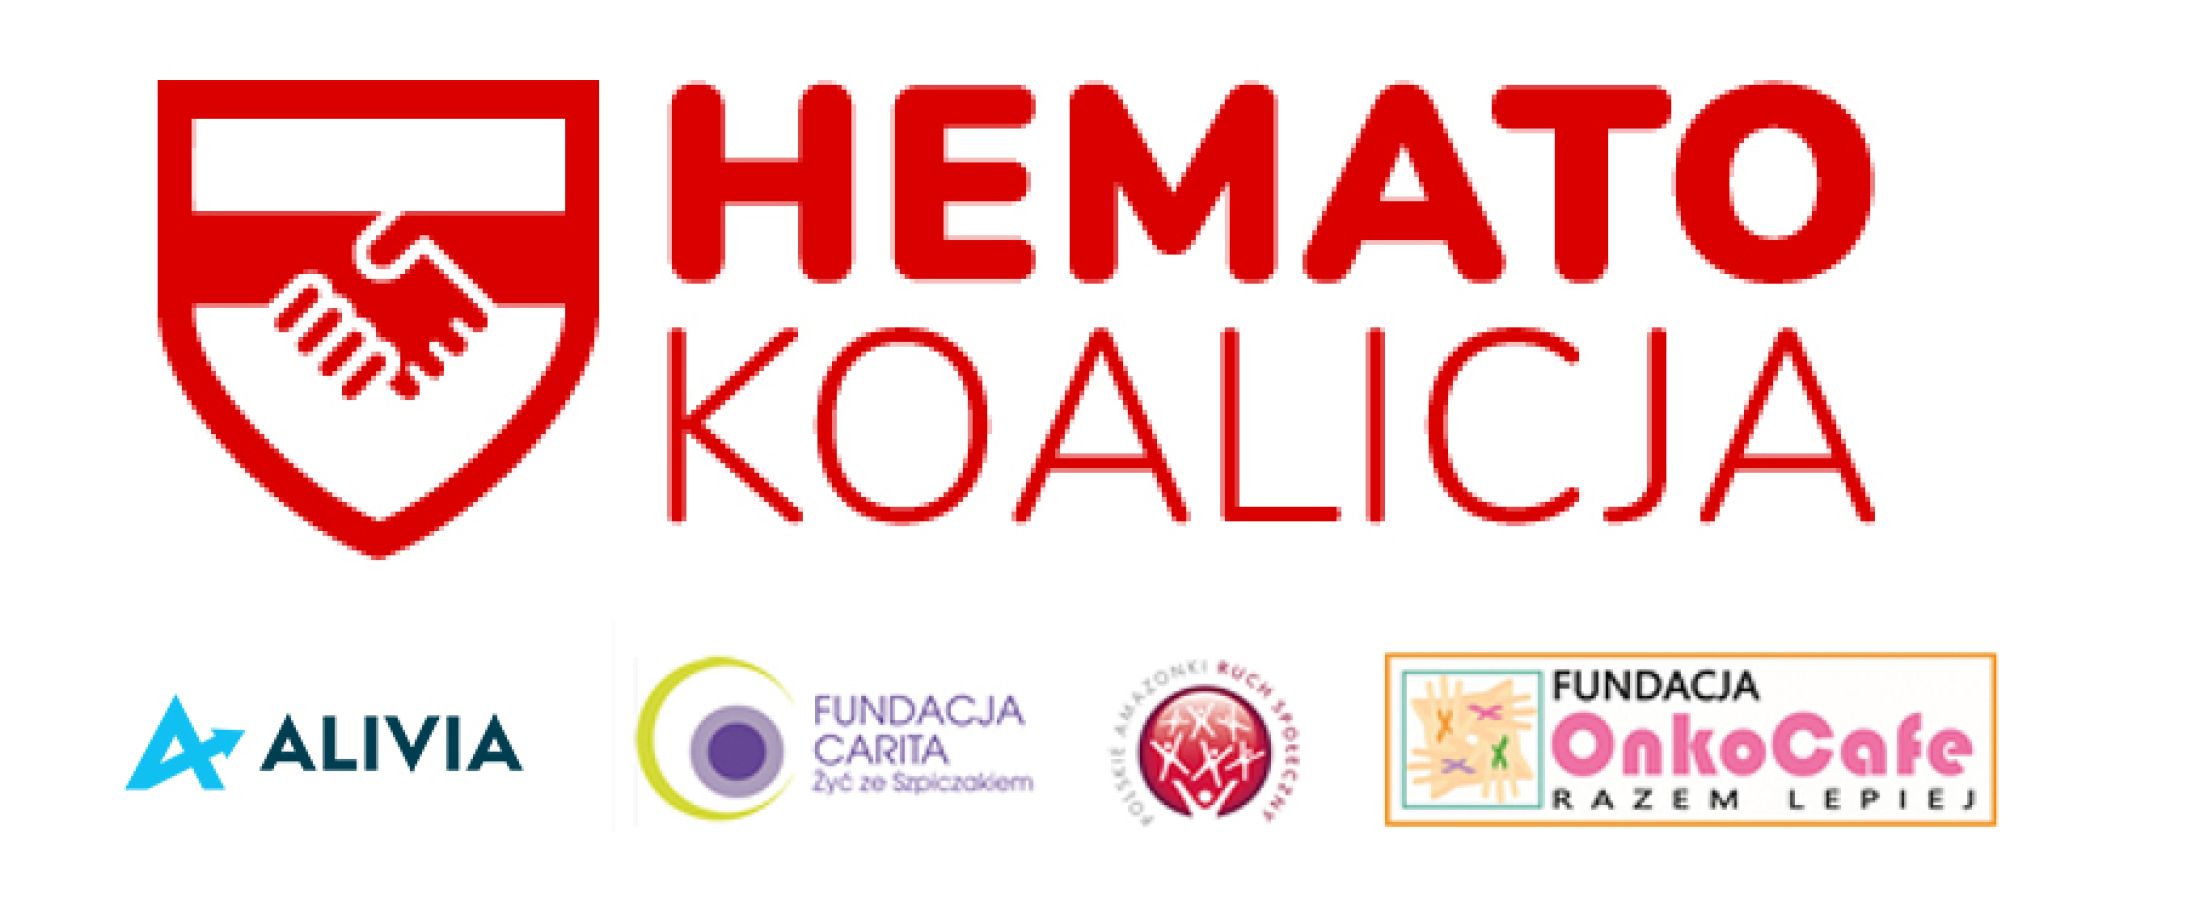 Logo Hematokoalicja